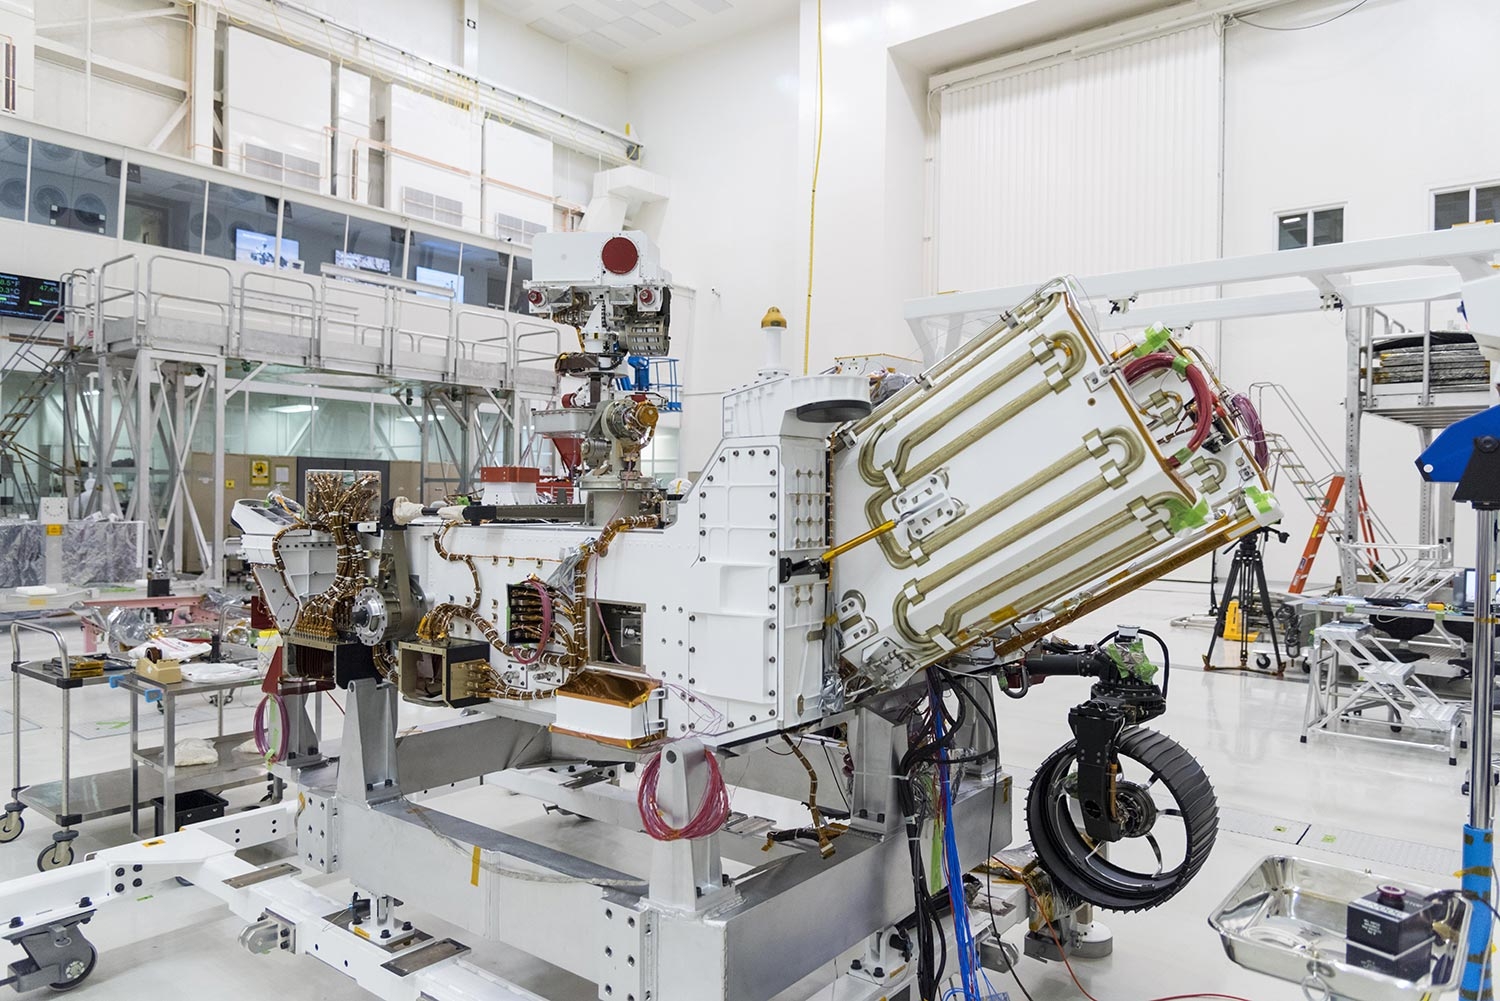 Im Sommer 2020 soll der Rover der Mars-2020-Mission mit einer Trägerrakete zum Mars geschickt werden. Die Energie für den Rover liefert der sogenannte MMRTG (abgewinkelt montiertes Bauteil in der rechten Bildhälfte), ein mit Plutonium betriebener thermoelektrischer Generator.